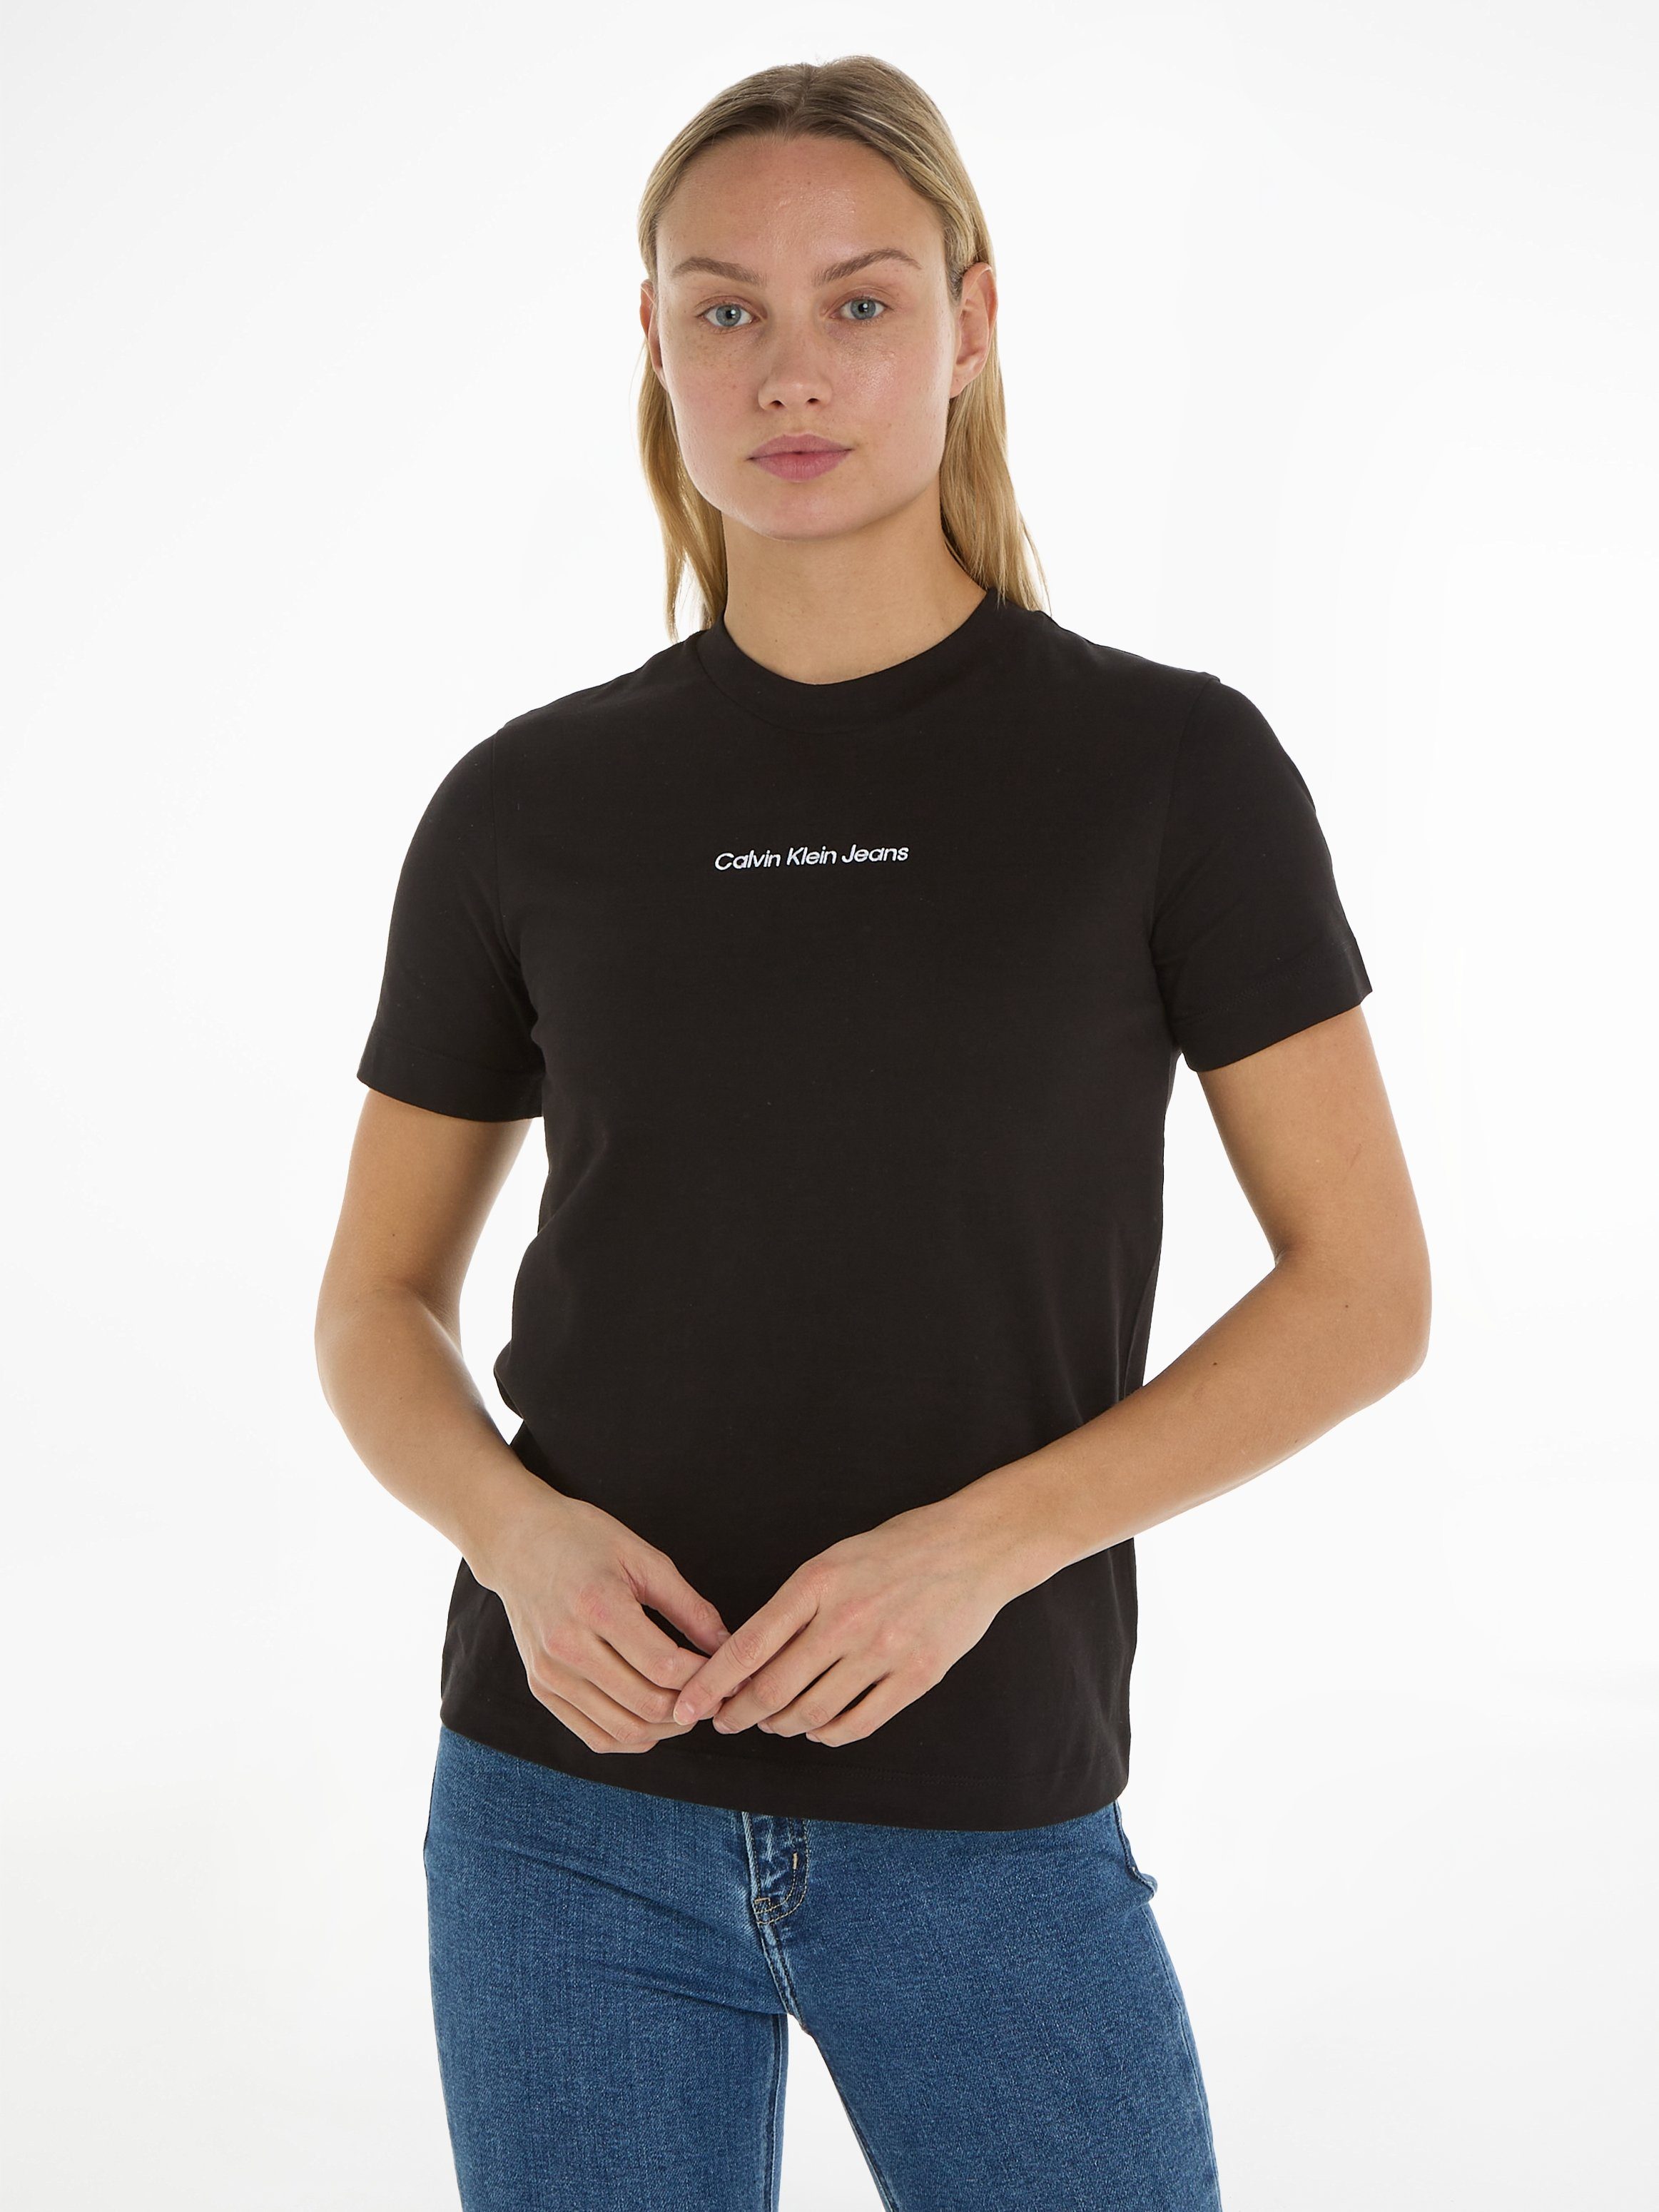 T-Shirt INSTITUTIONAL Ck Calvin Black Klein Jeans TEE STRAIGHT mit Markenlabel